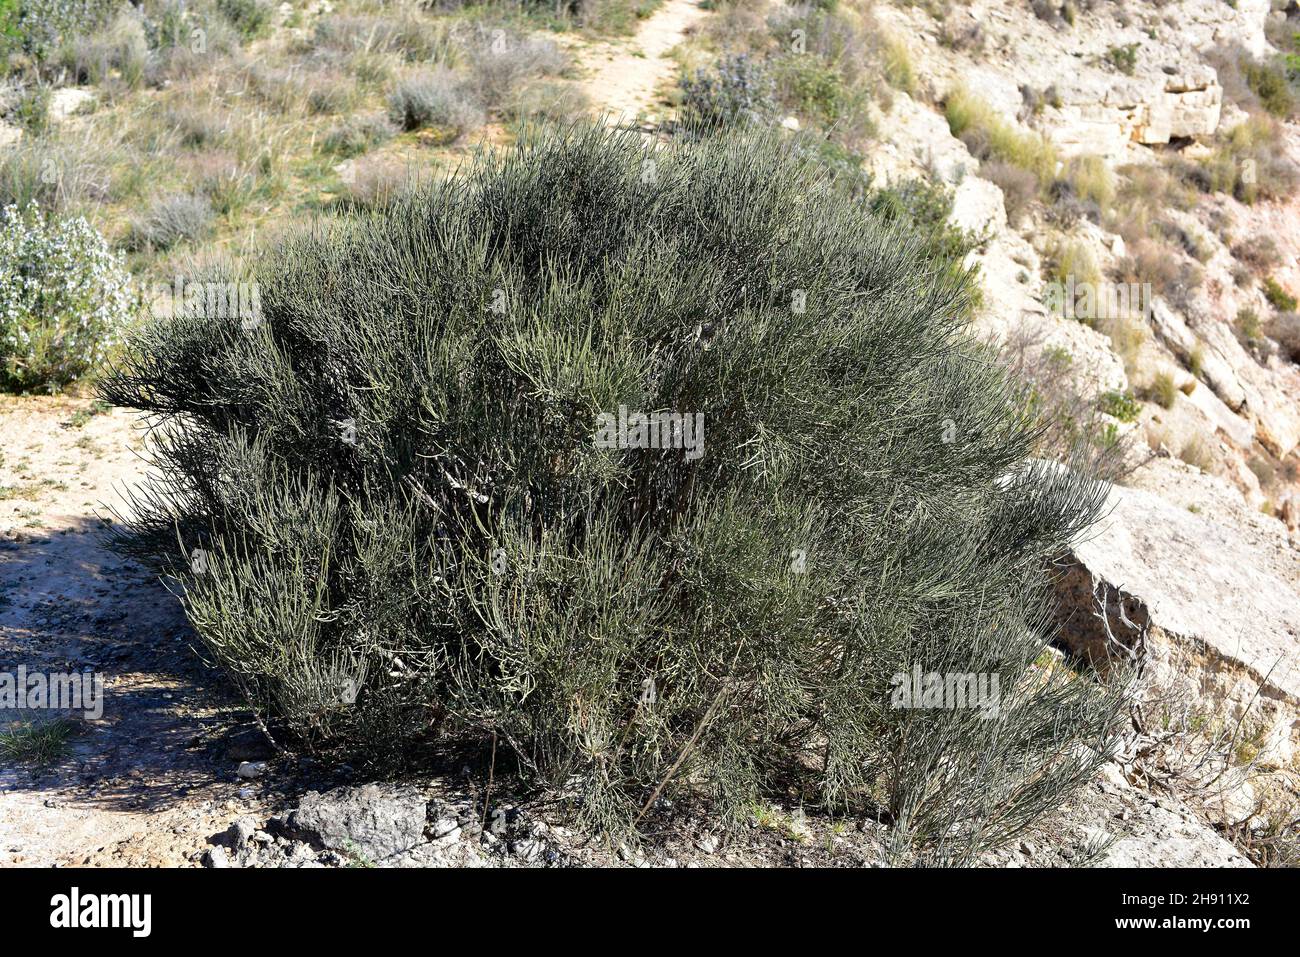 Efedra (Ephedra Major ou Ephedra nebrodensis) est un arbuste médicinal originaire d'une partie du bassin méditerranéen et de l'Asie occidentale.Cette photo a été prise dans Banque D'Images